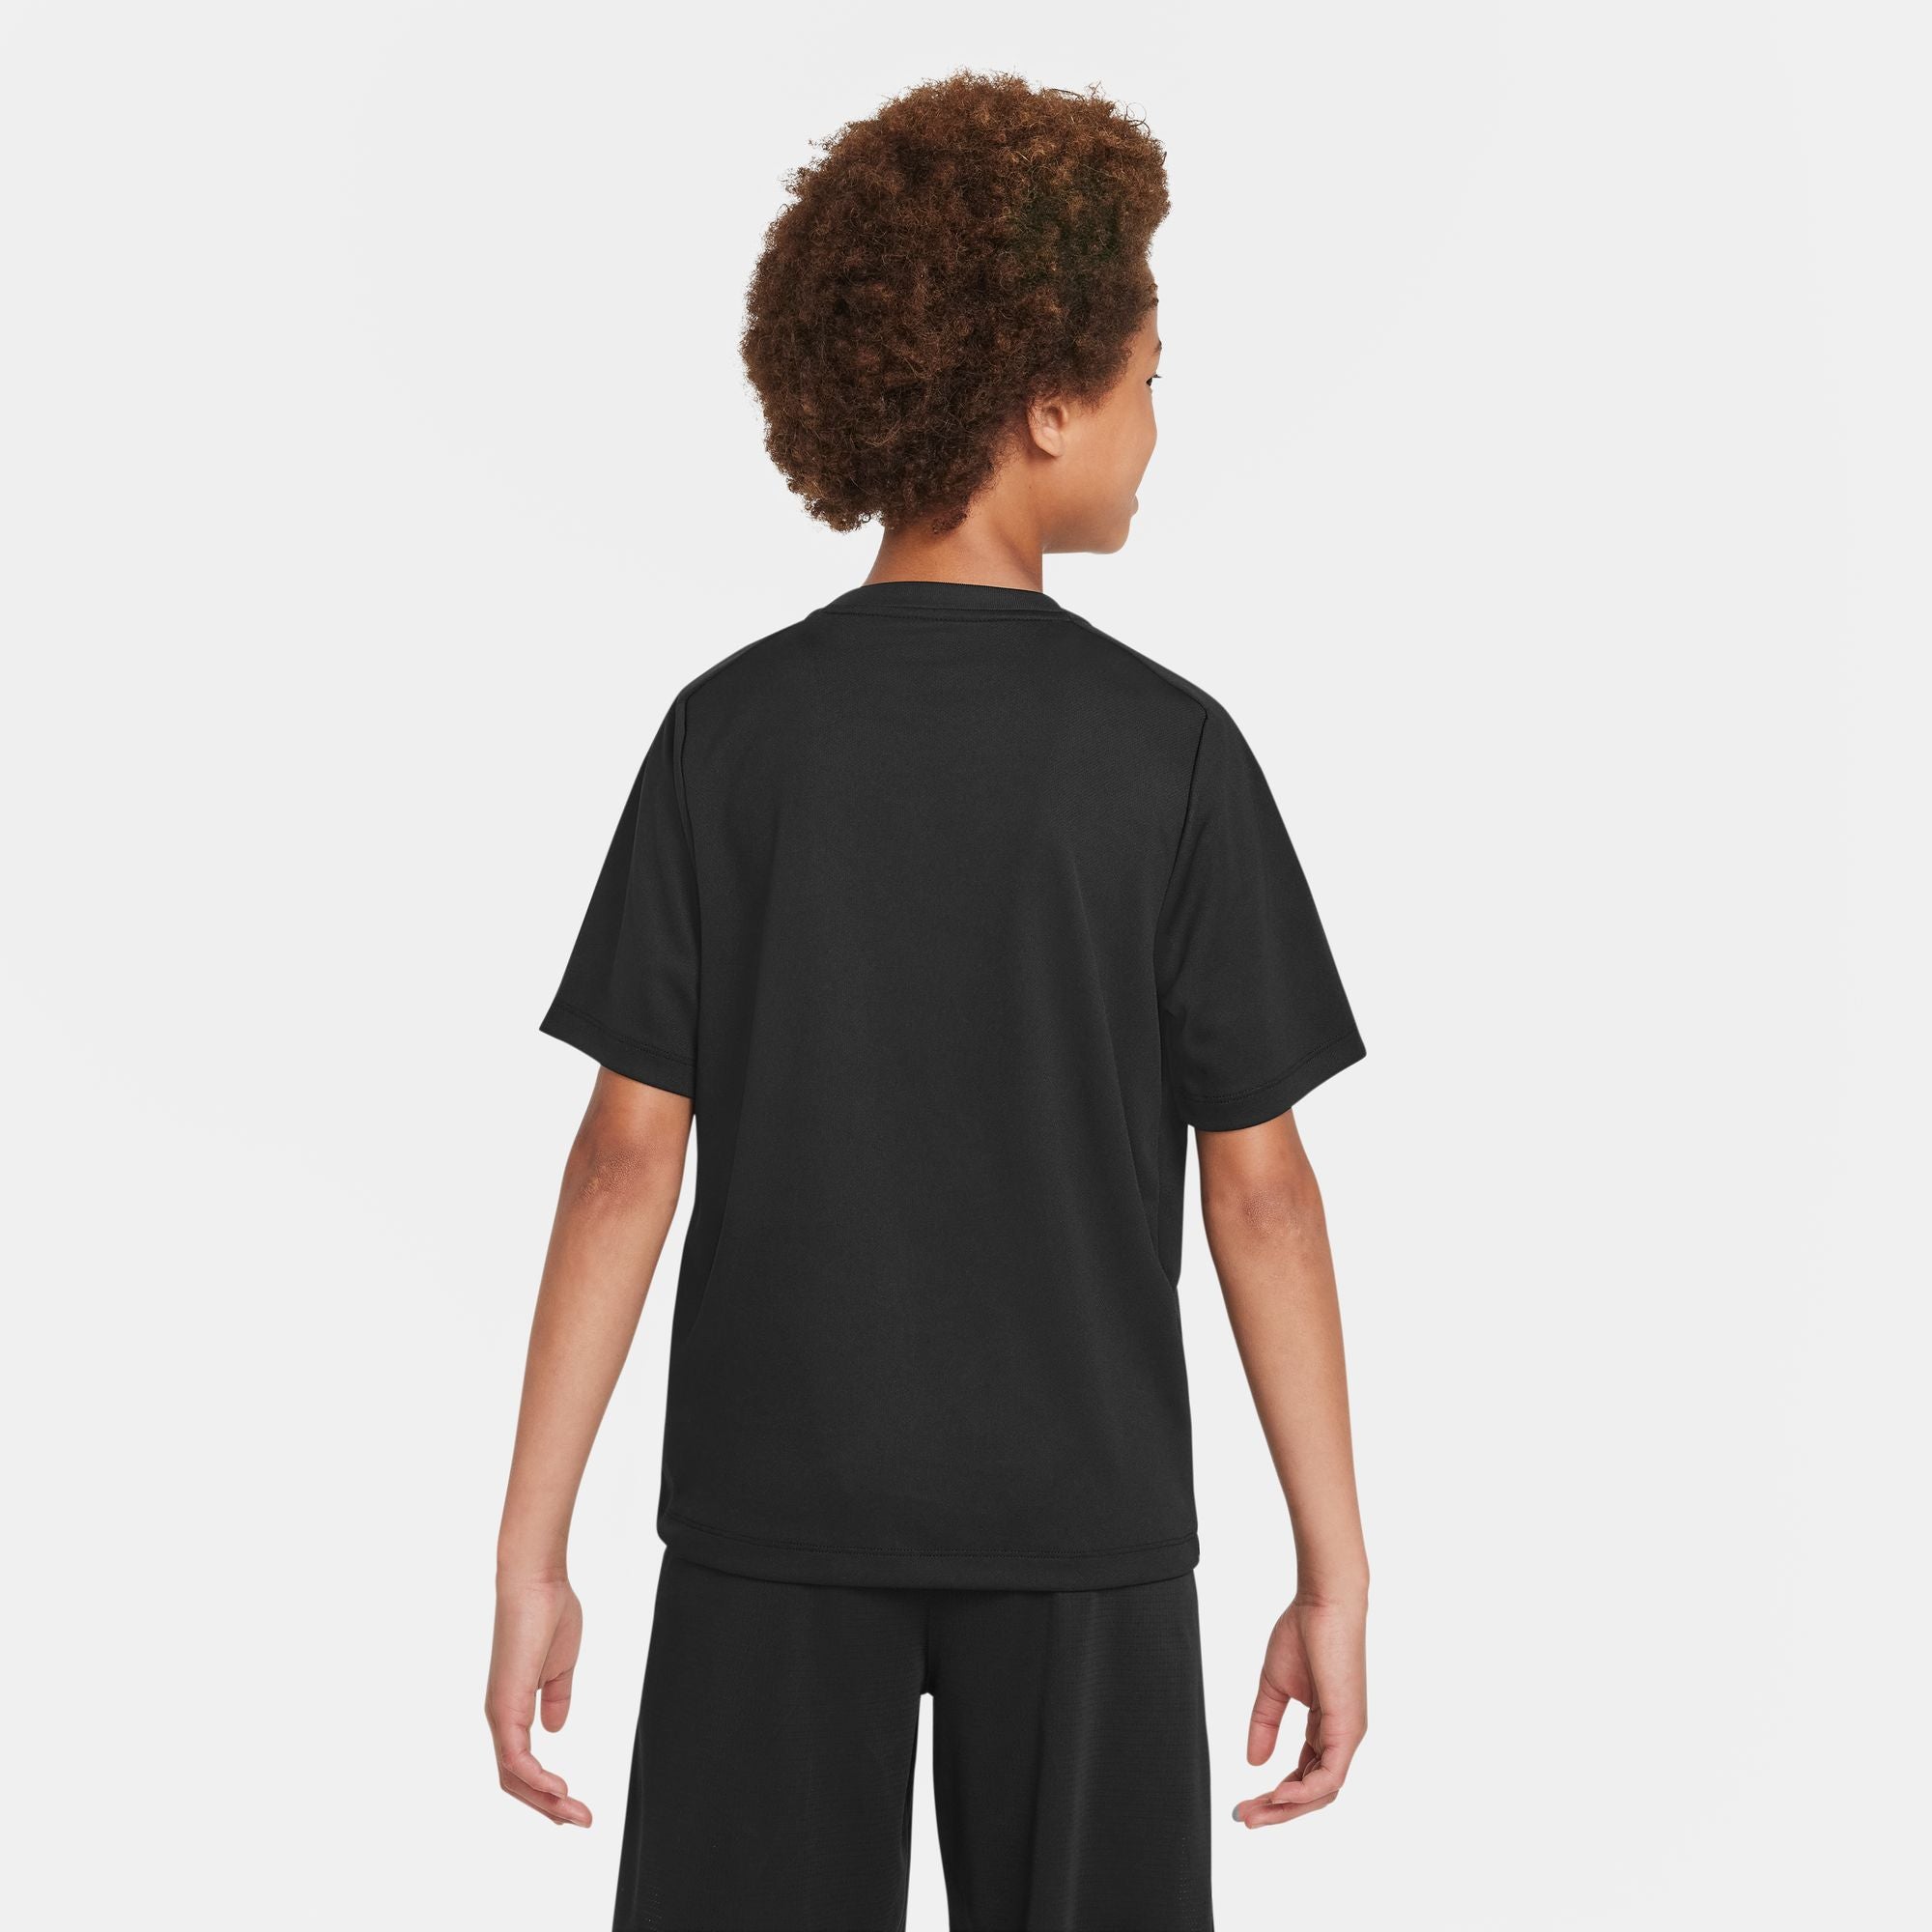 Nike Dri-FIT Multi Boys' Short Sleeve Shirt Black (2)